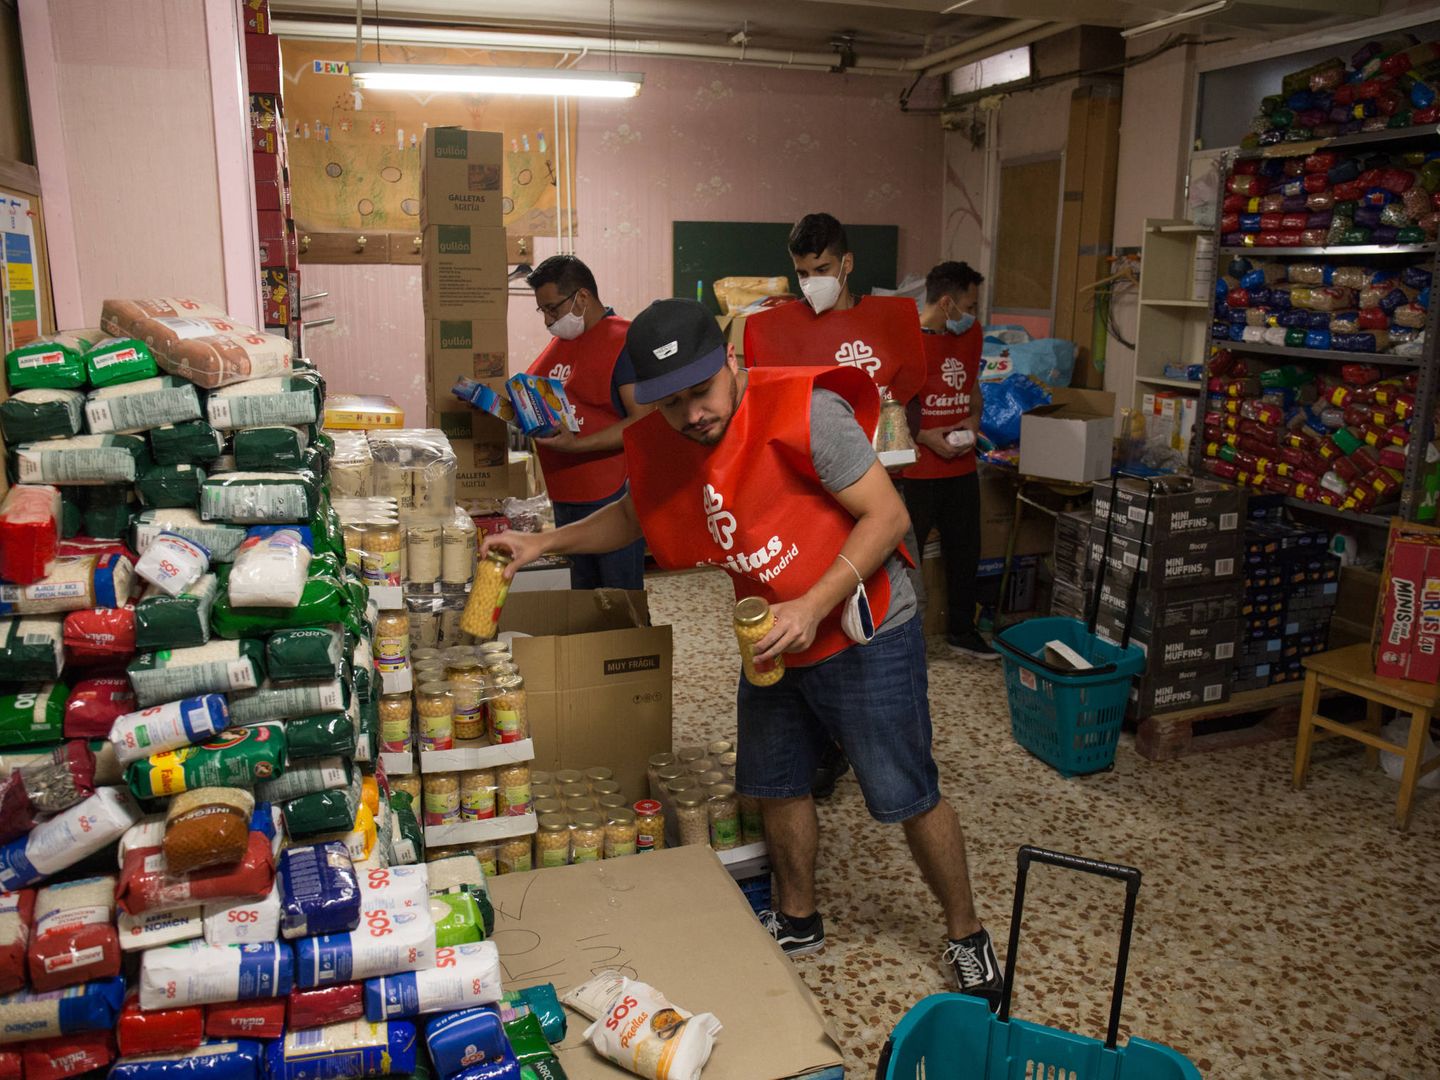 Voluntarios y residentes en Santa Rosalía preparan carros de comida solidaria. (D.B.)